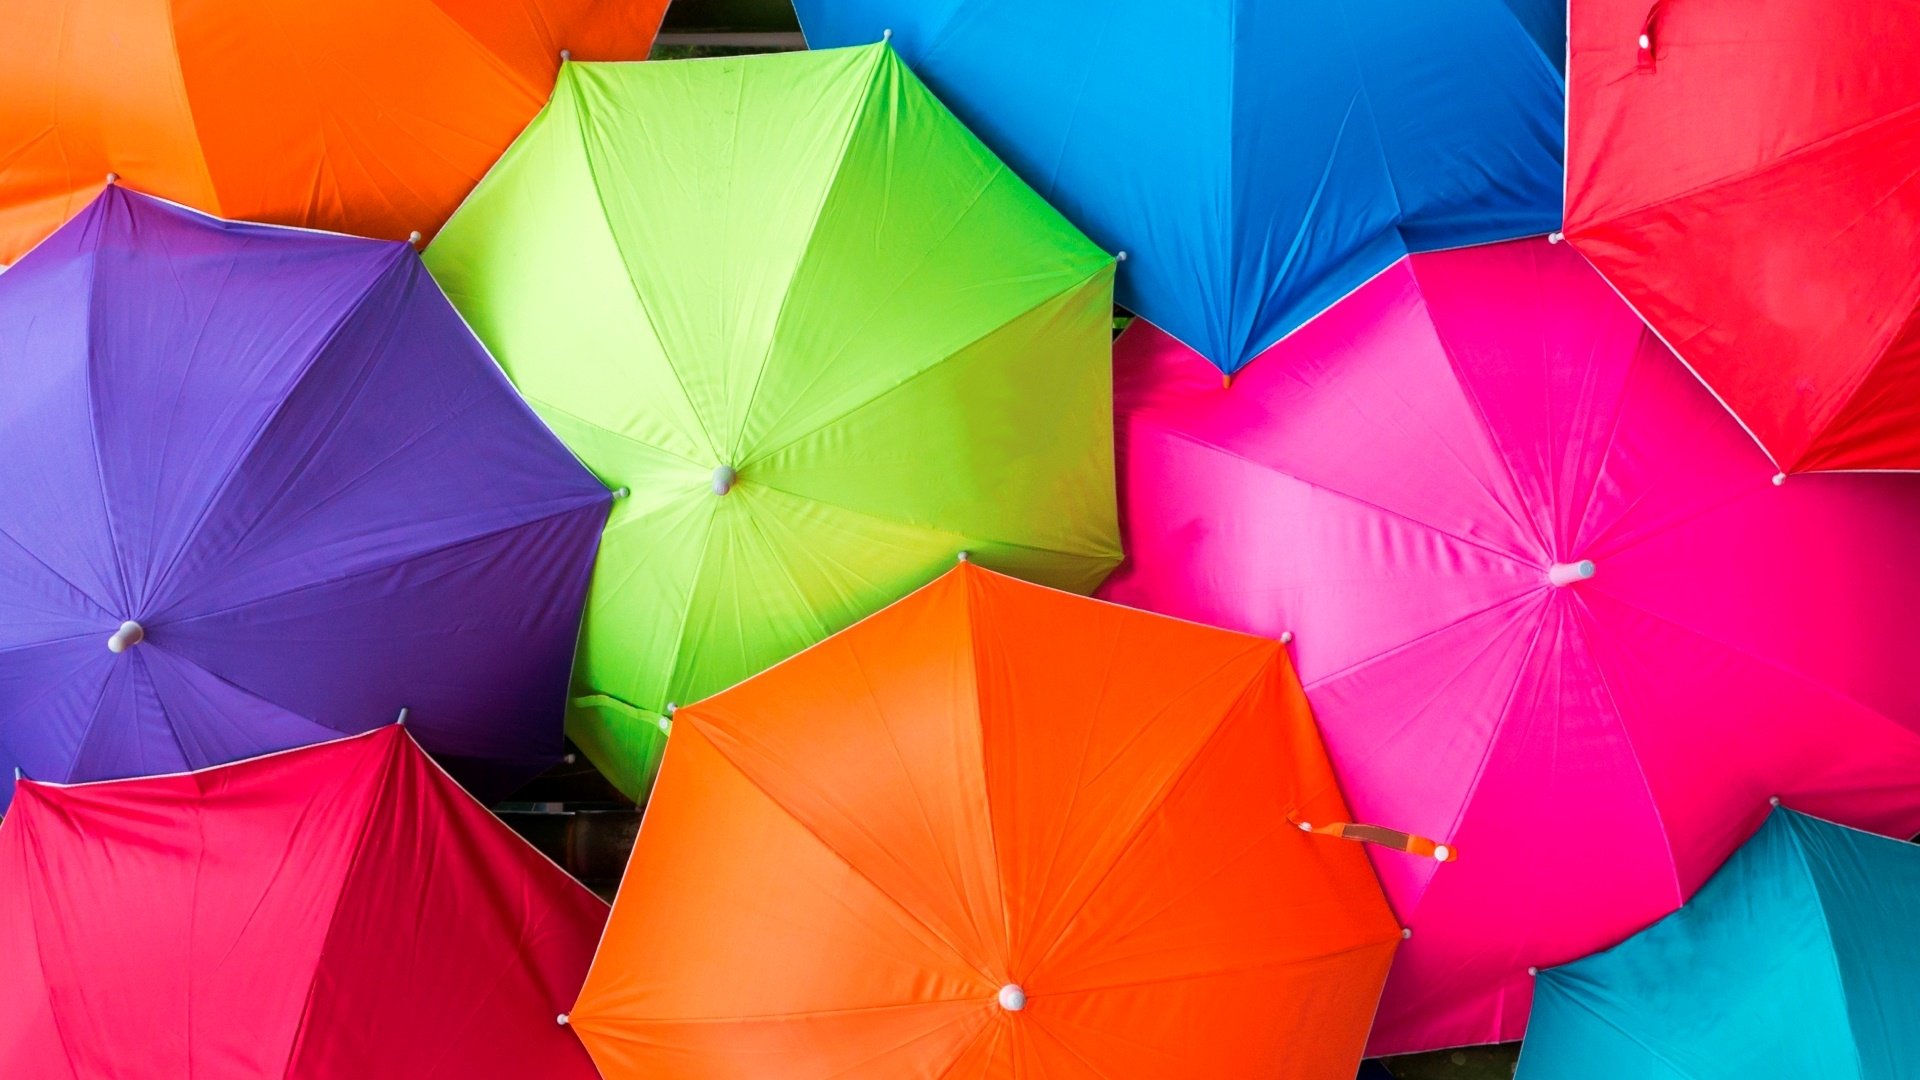 umbrella wallpaper,umbrella,orange,inflatable,fashion accessory,origami